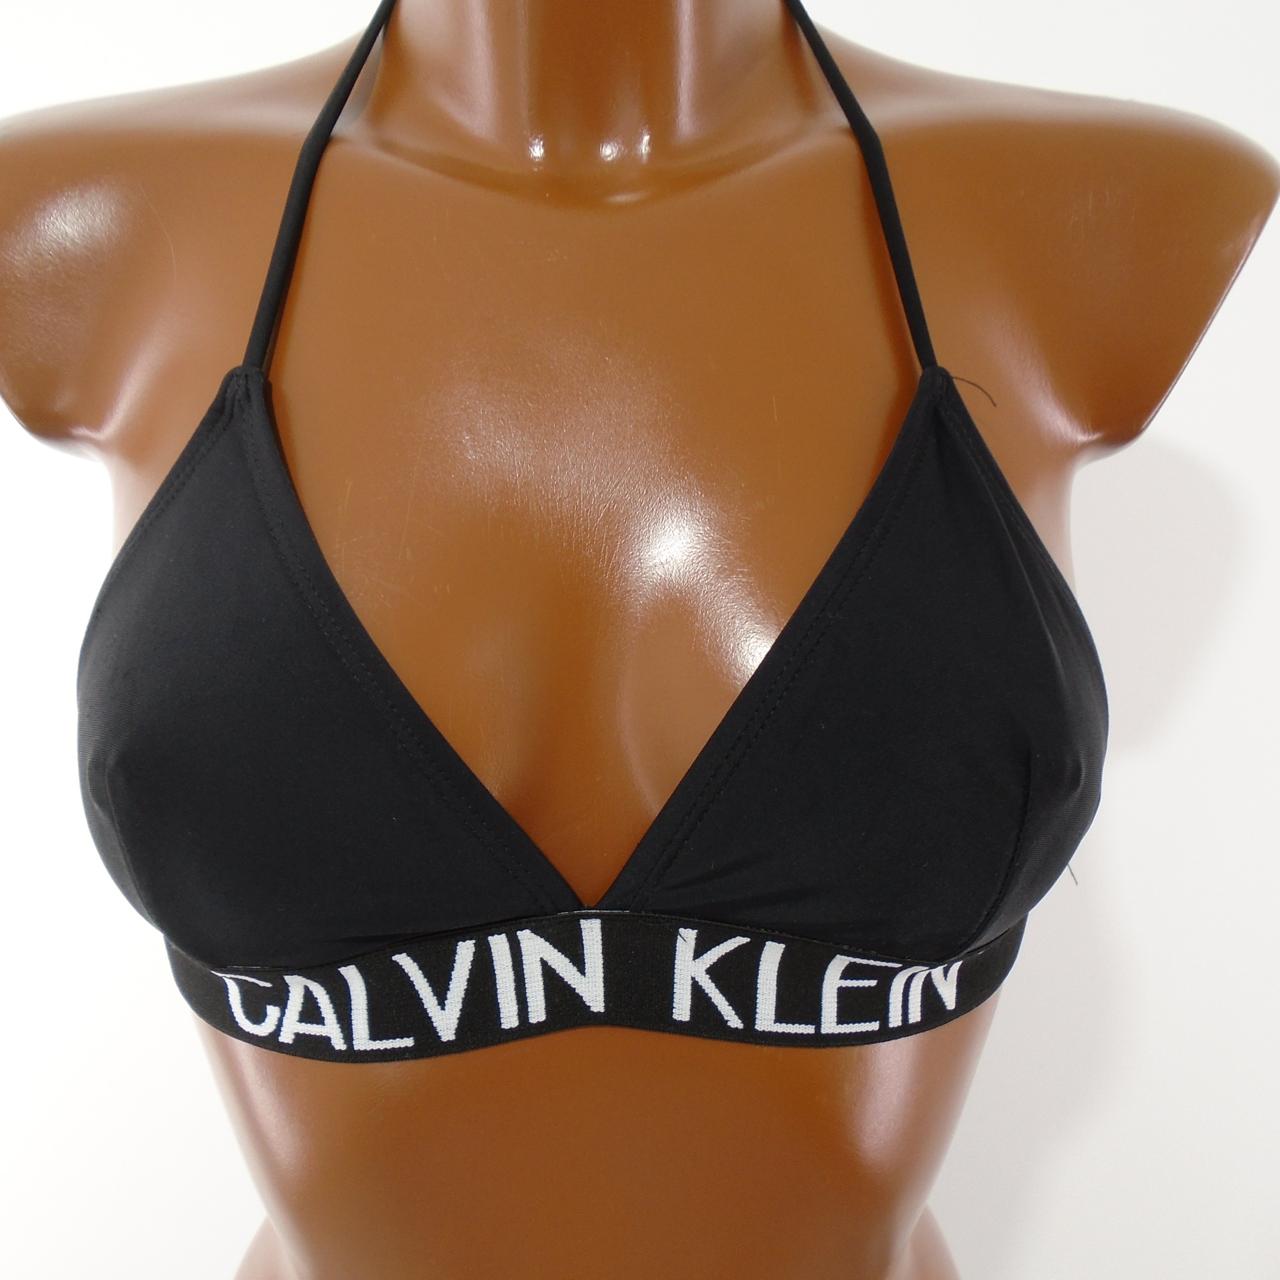 Damen Badeanzug Calvin Klein. Schwarz. S. Gebraucht. Gut